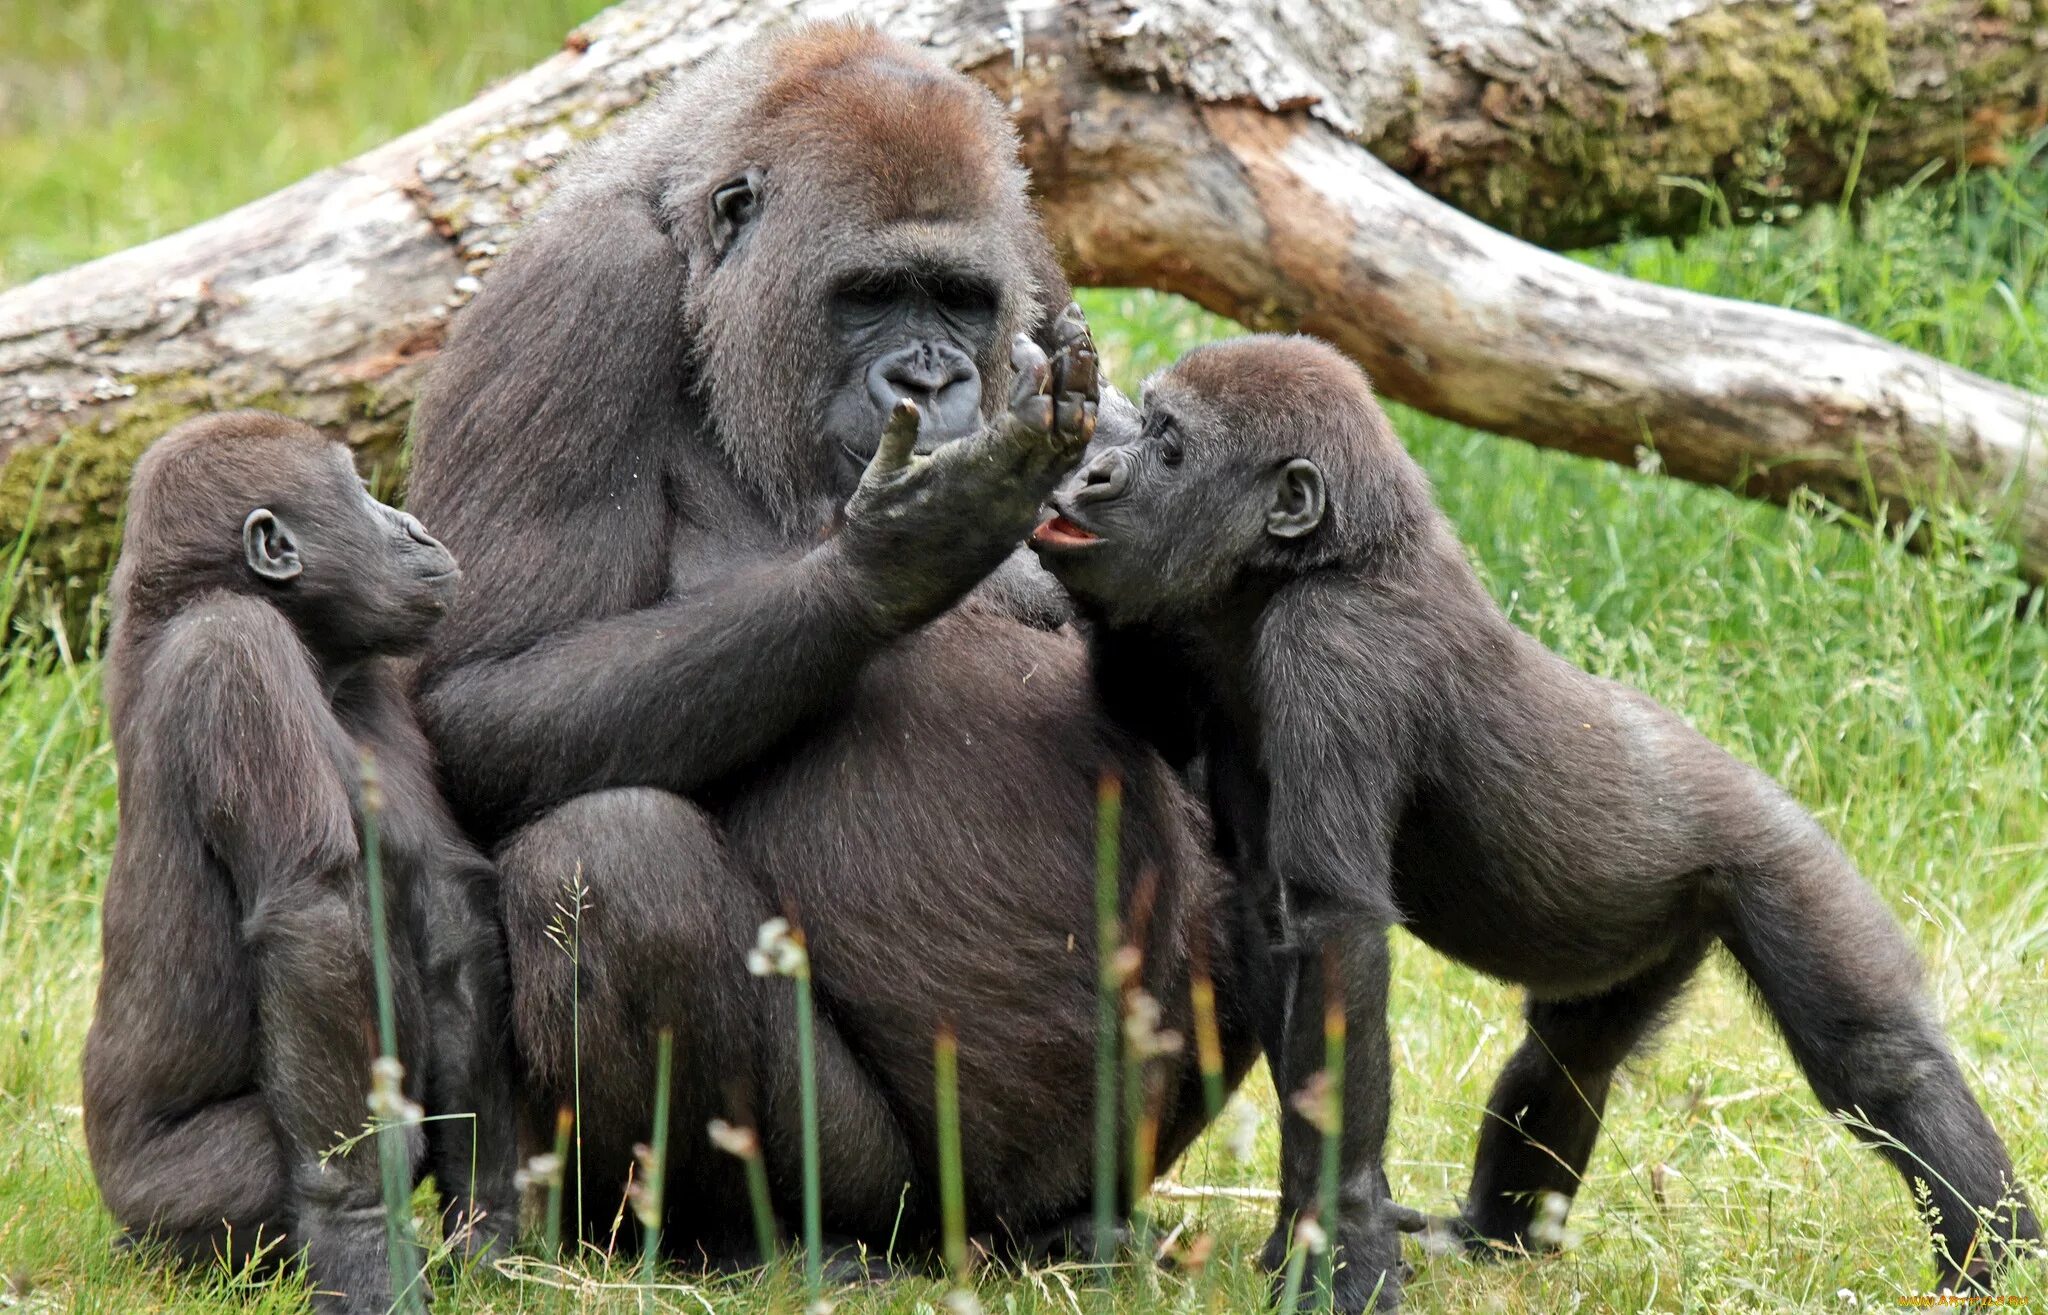 Animal communication. Общение обезьян. Коммуникация обезьян. Коммуникация шимпанзе. Общение обезьян между собой.